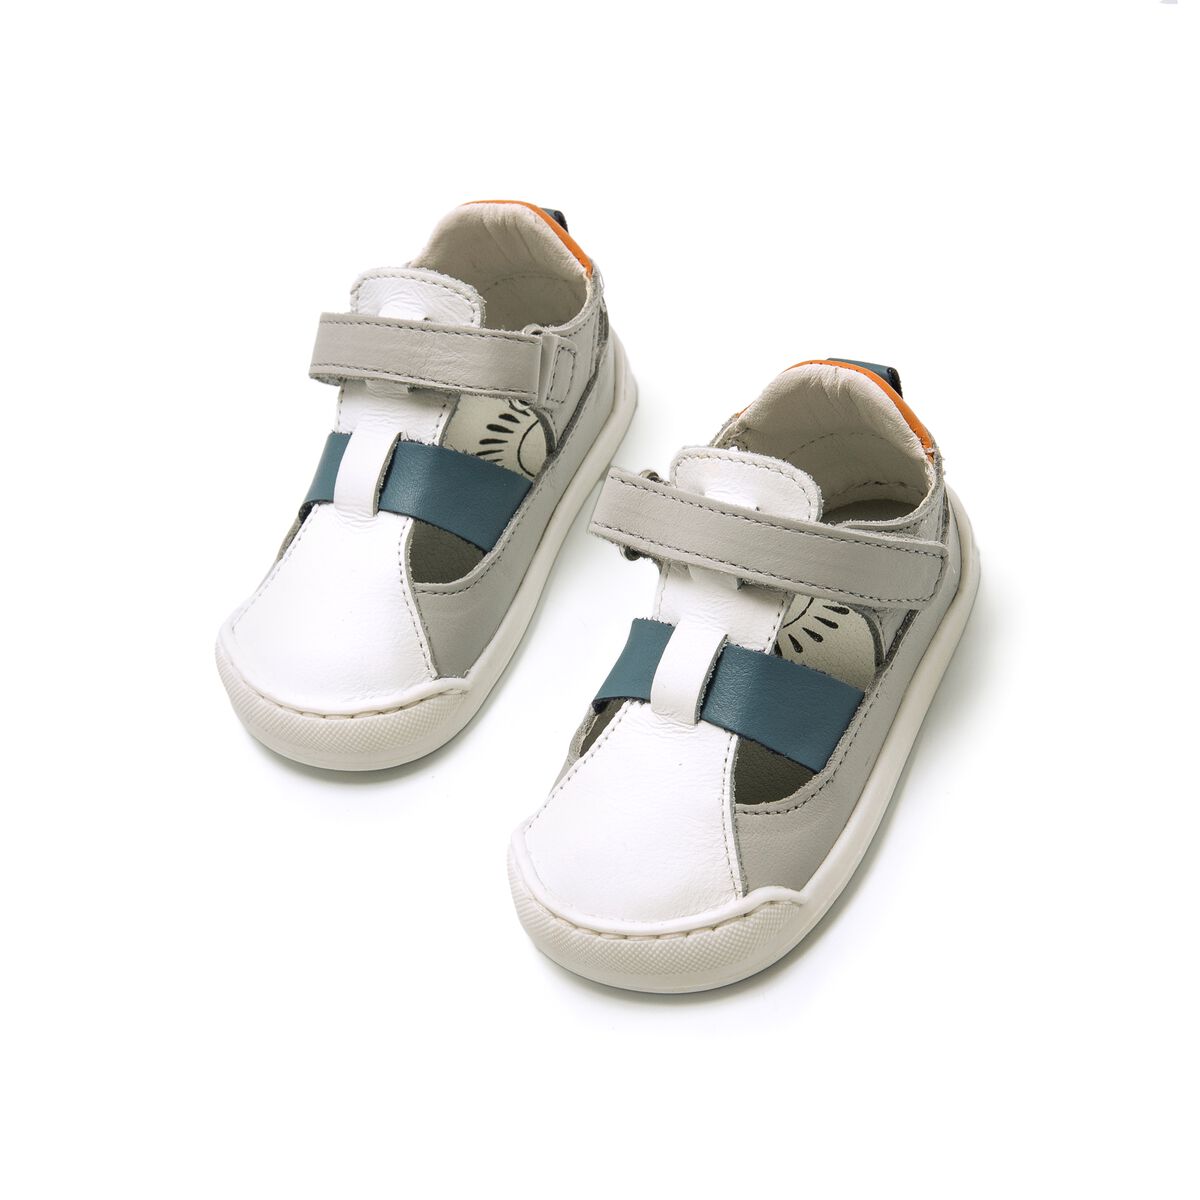 Sandalias de Nino modelo FREE BABY de MTNG image number 4